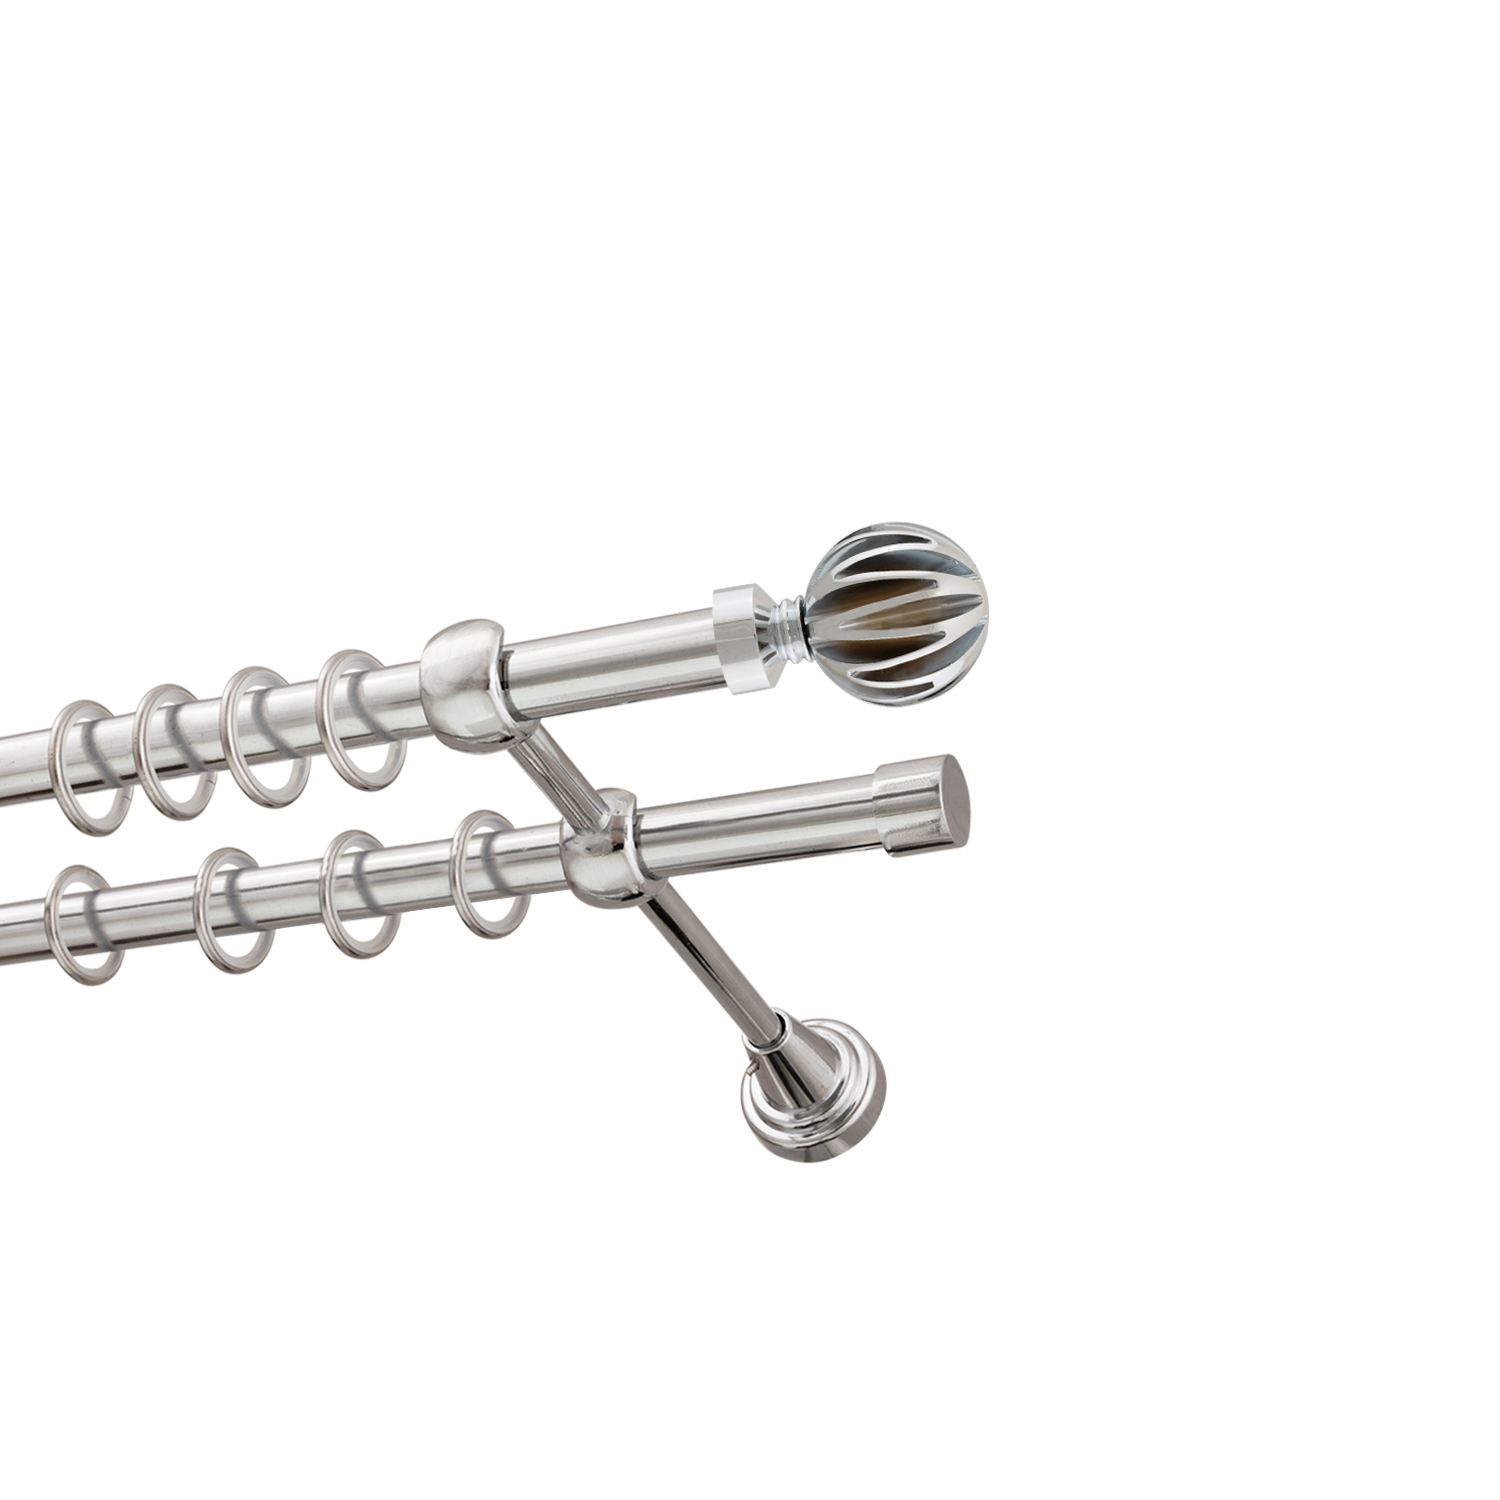 Металлический карниз для штор Шафран, двухрядный 16/16 мм, серебро, гладкая штанга, длина 240 см - фото Wikidecor.ru